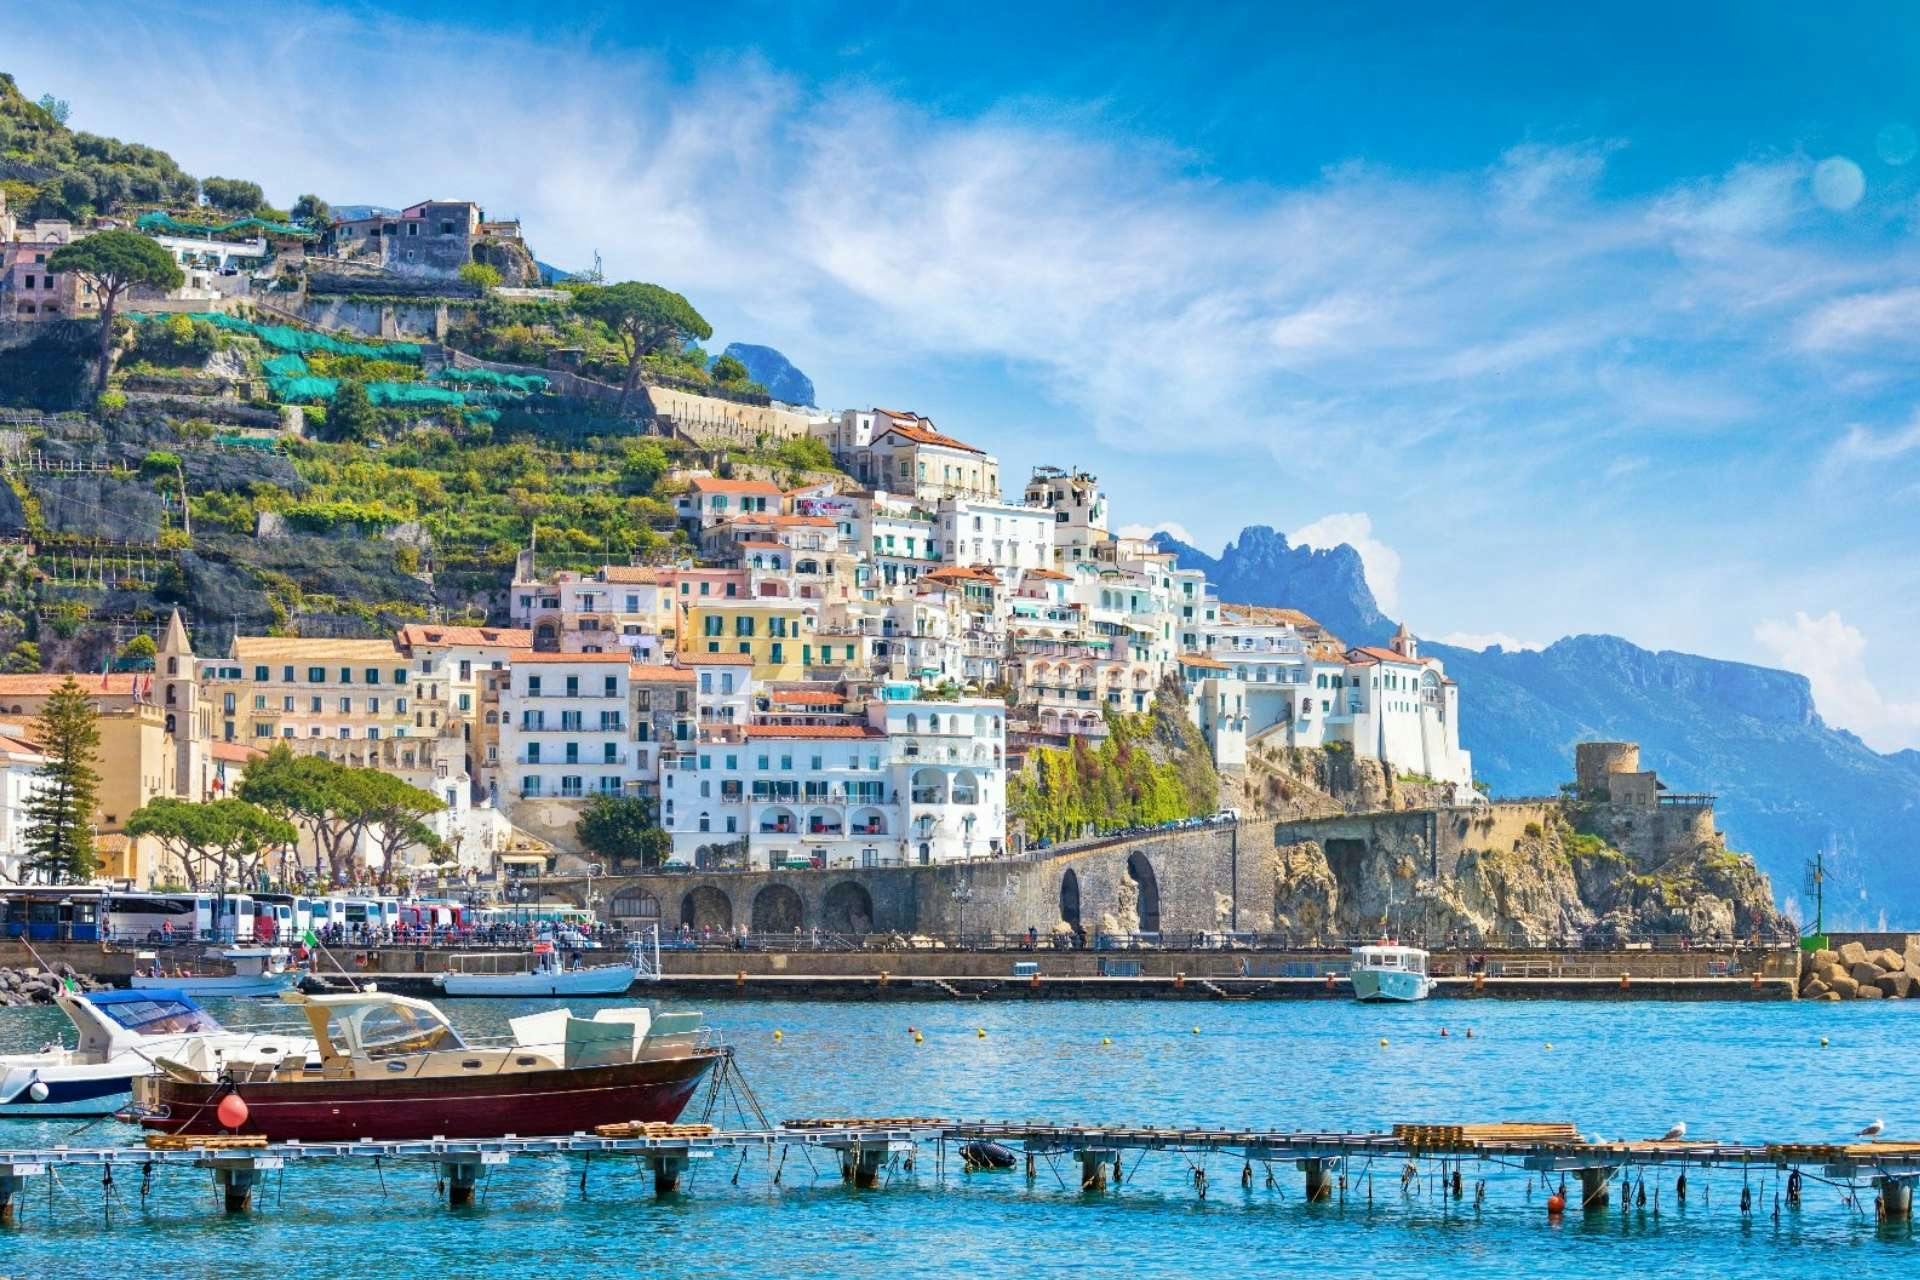 Naviga verso le bellezze della Costiera Amalfitana